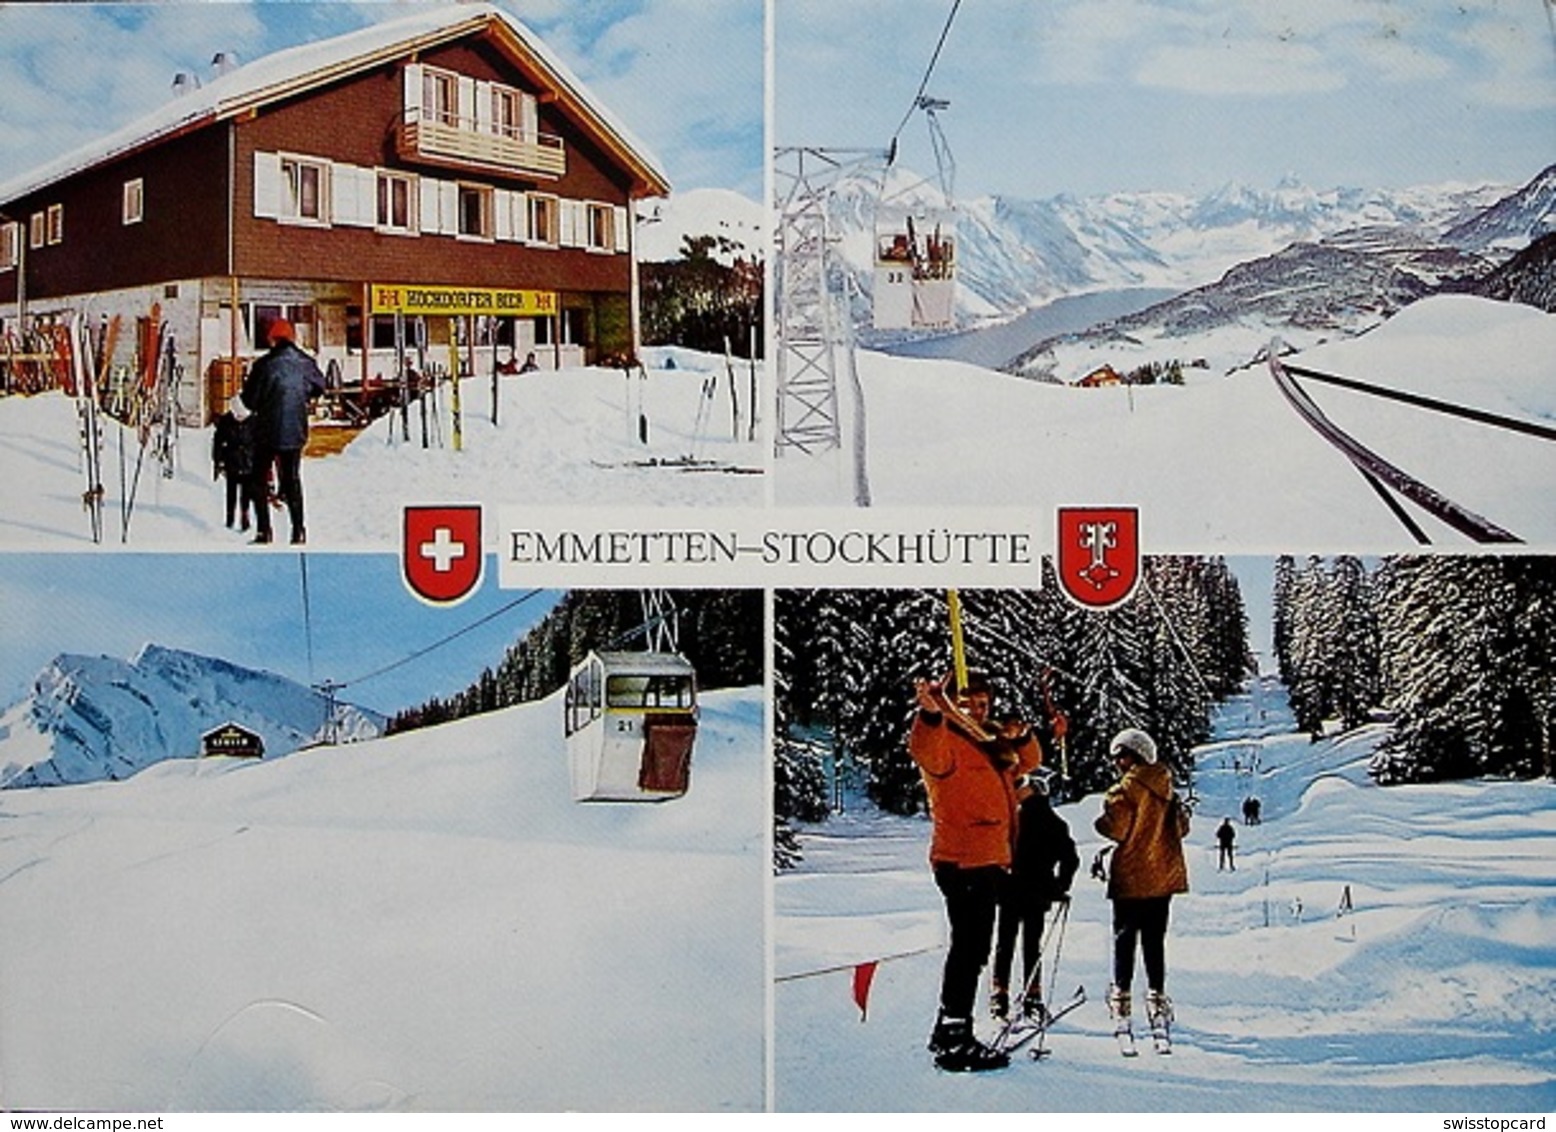 EMMETTEN Gondelbahn Restaurant Stockhütte Wintersport Ski Skilift Hochdorf Bier - Hochdorf